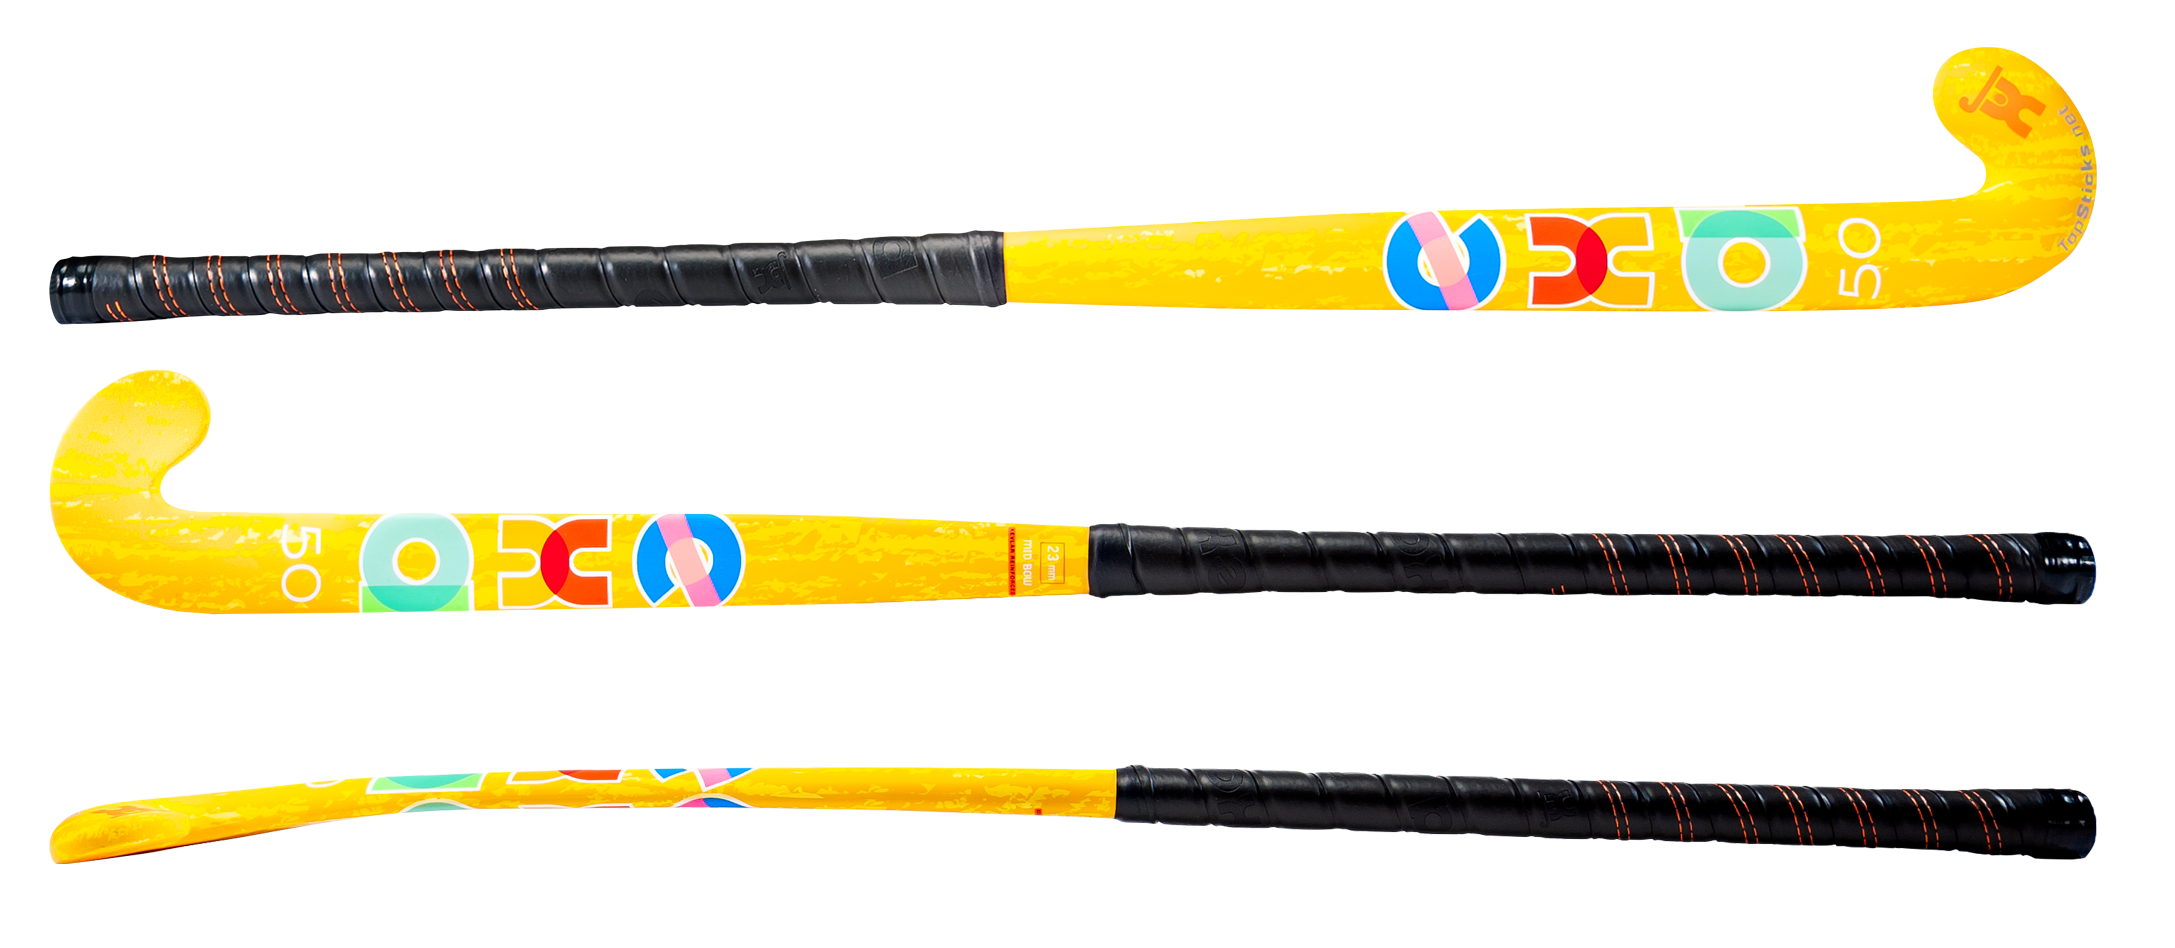 Exa 50 Mid Bow Yellow Field Hockey Stick